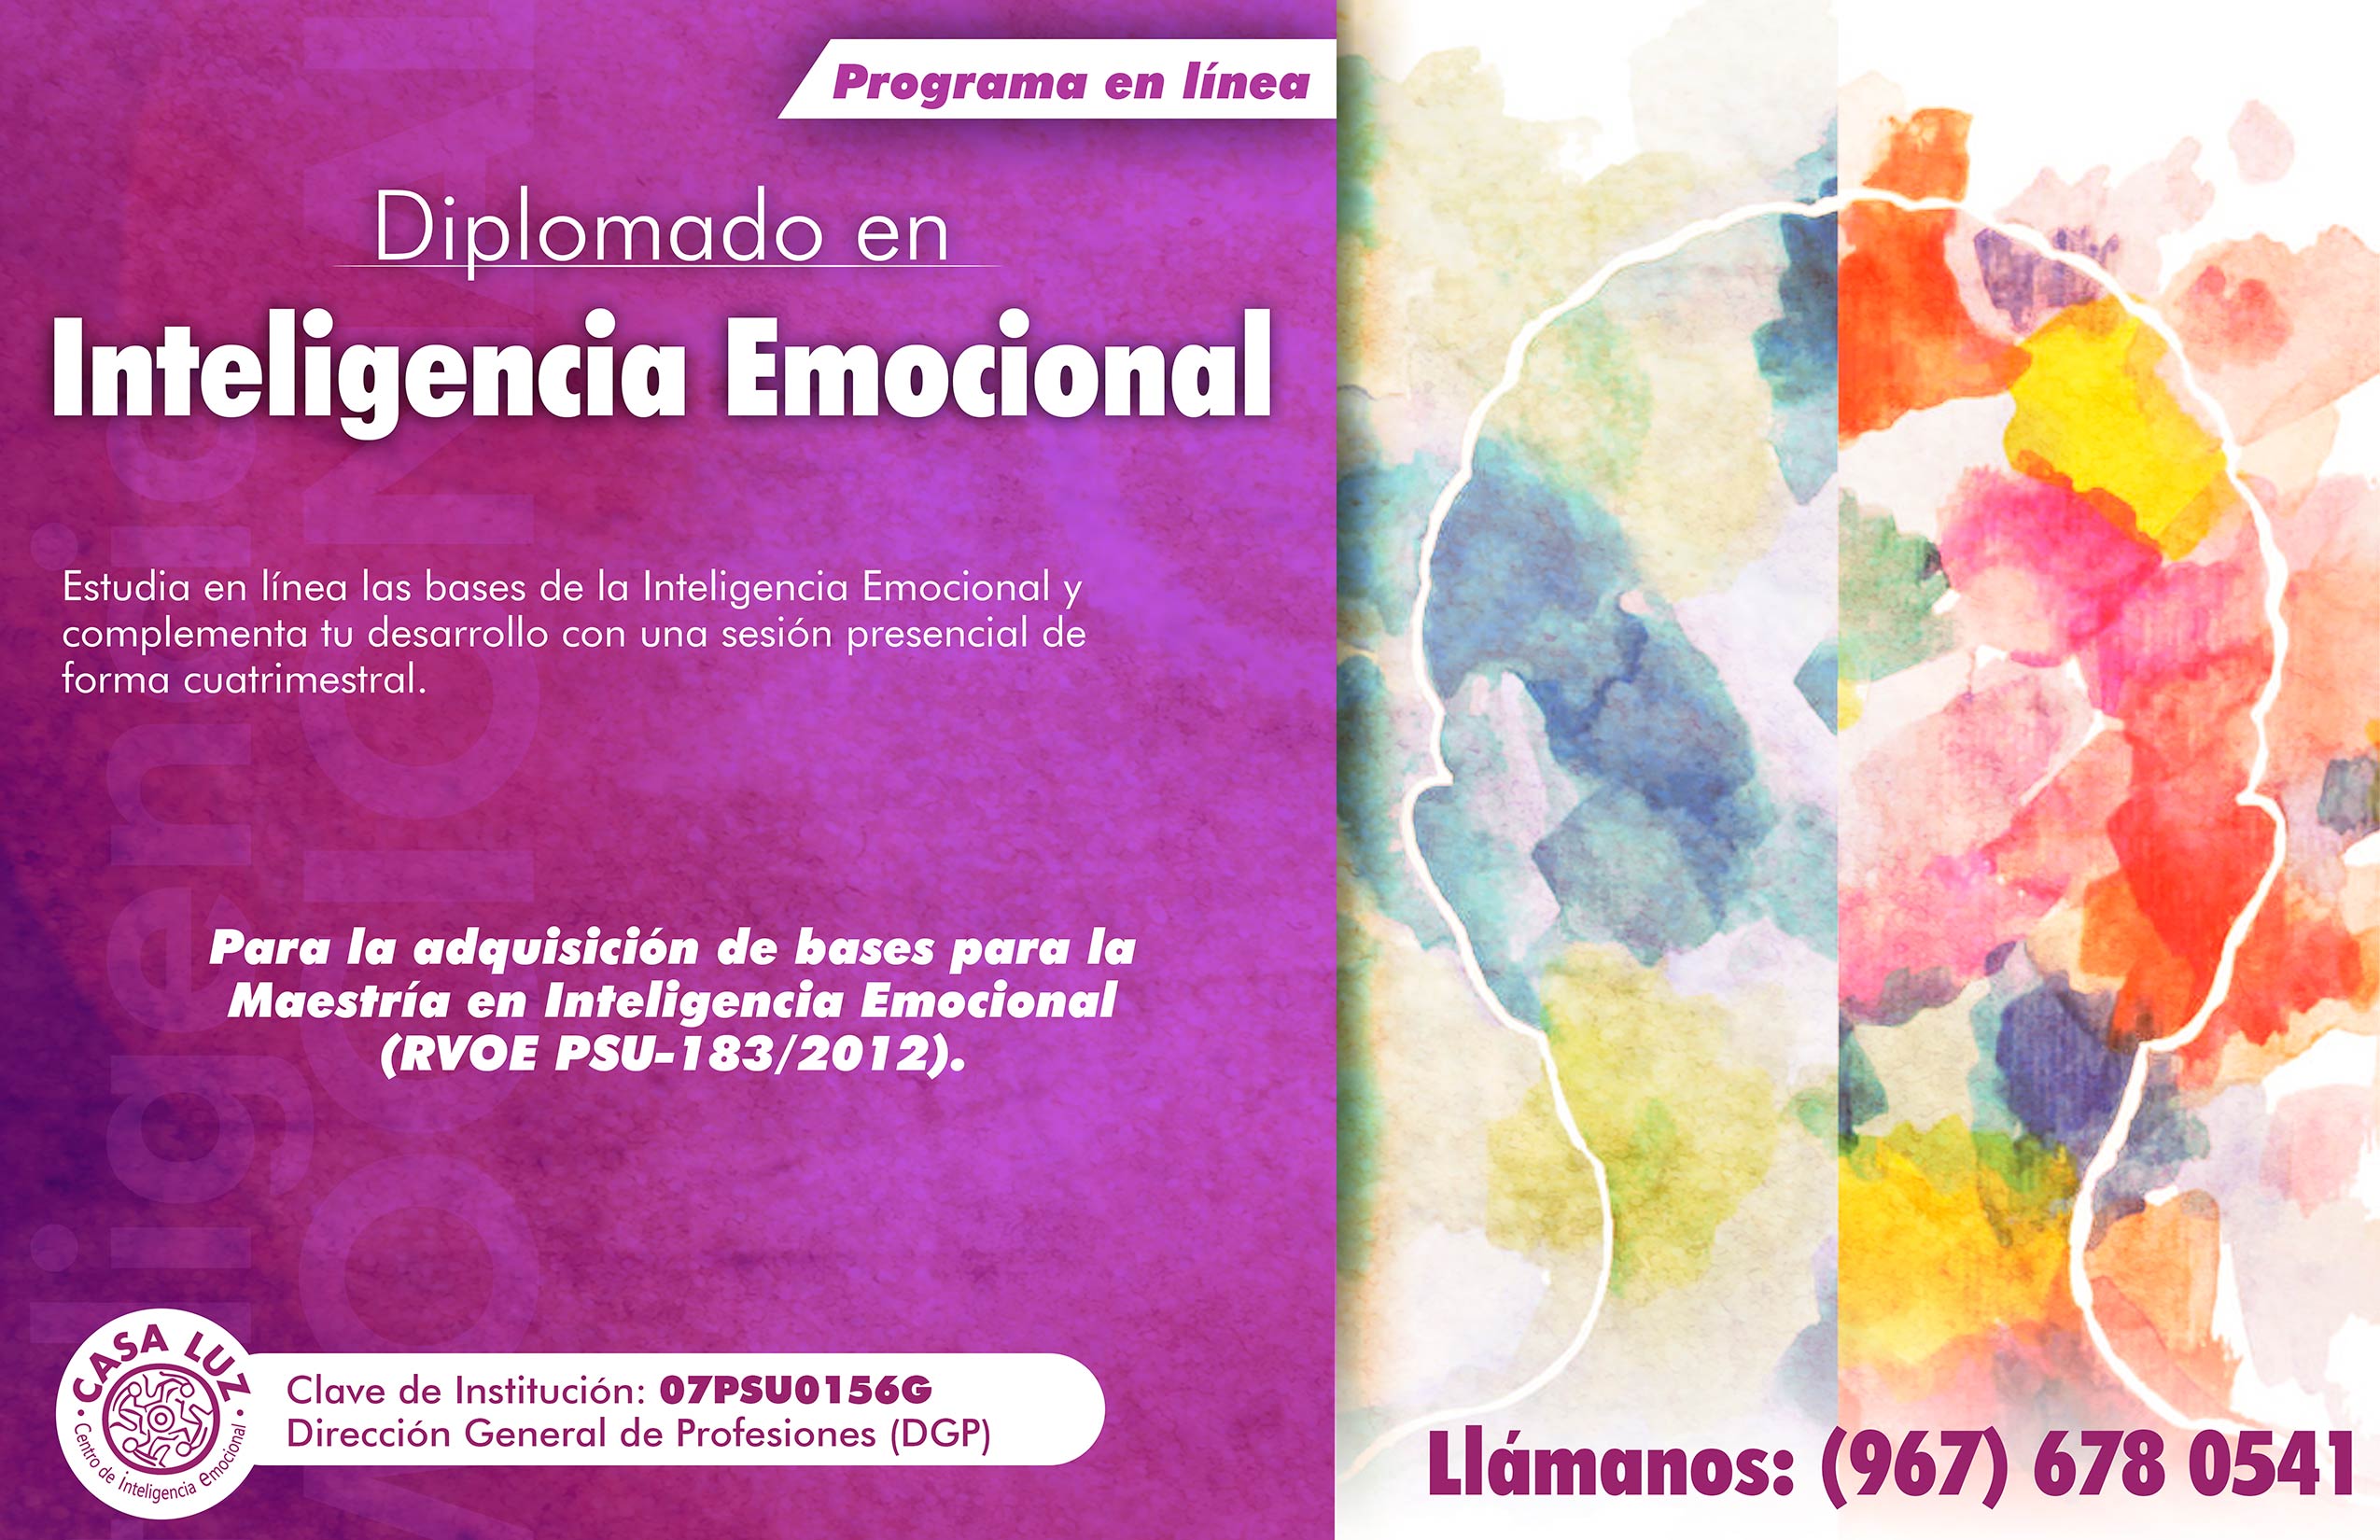 Diplomado en Inteligencia Emocional en Línea